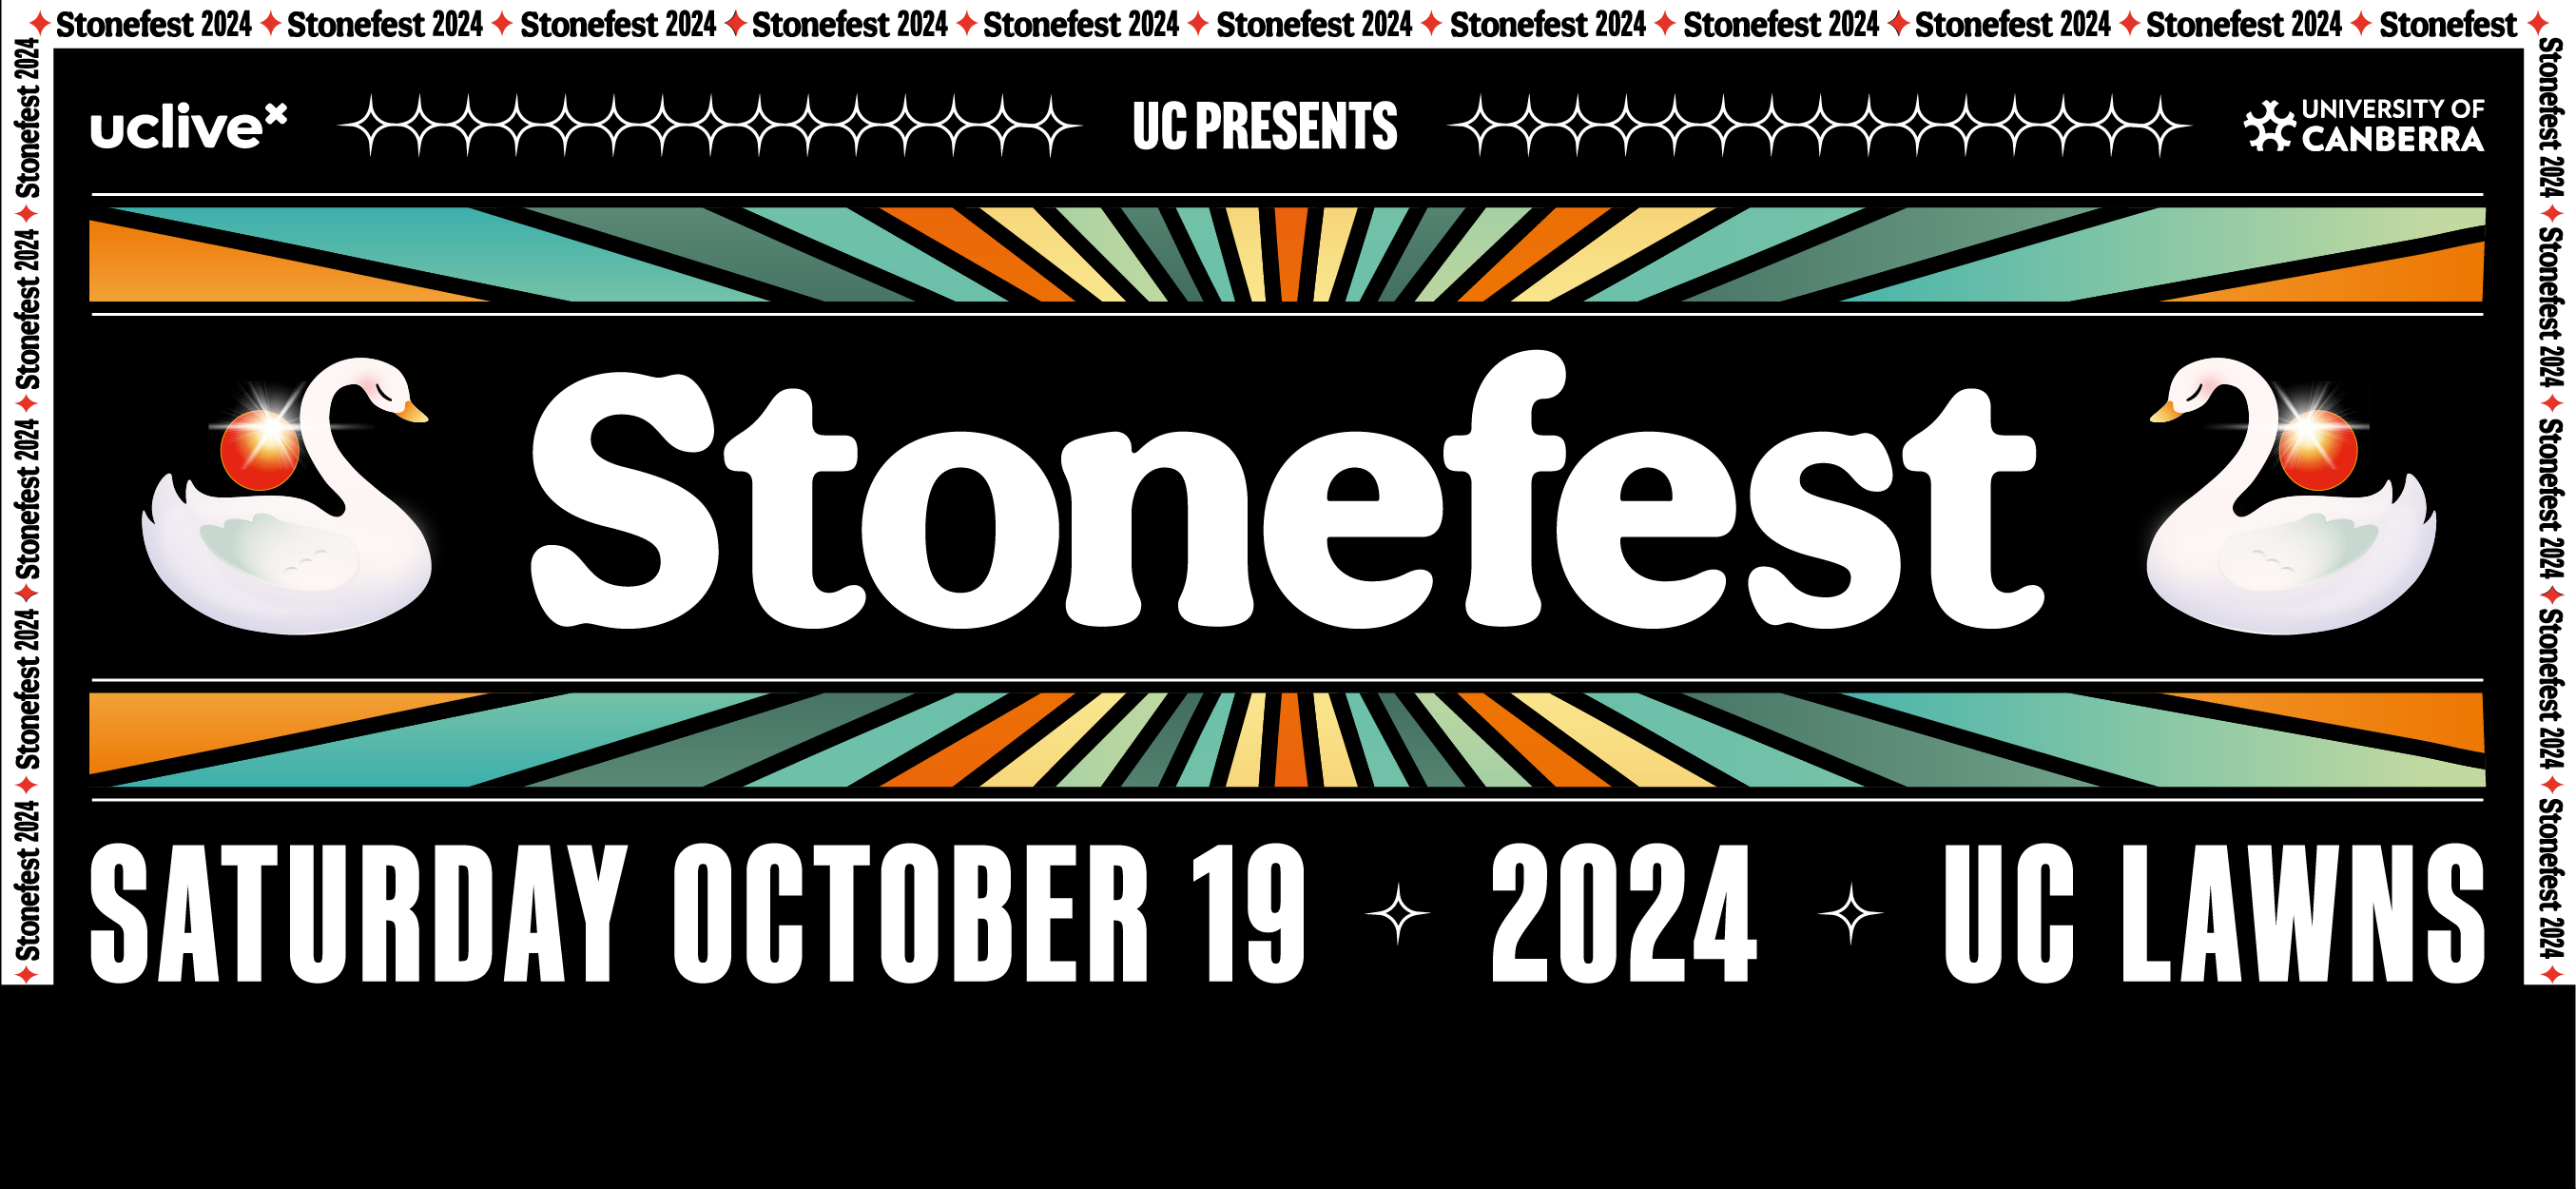 Stonefest 2024